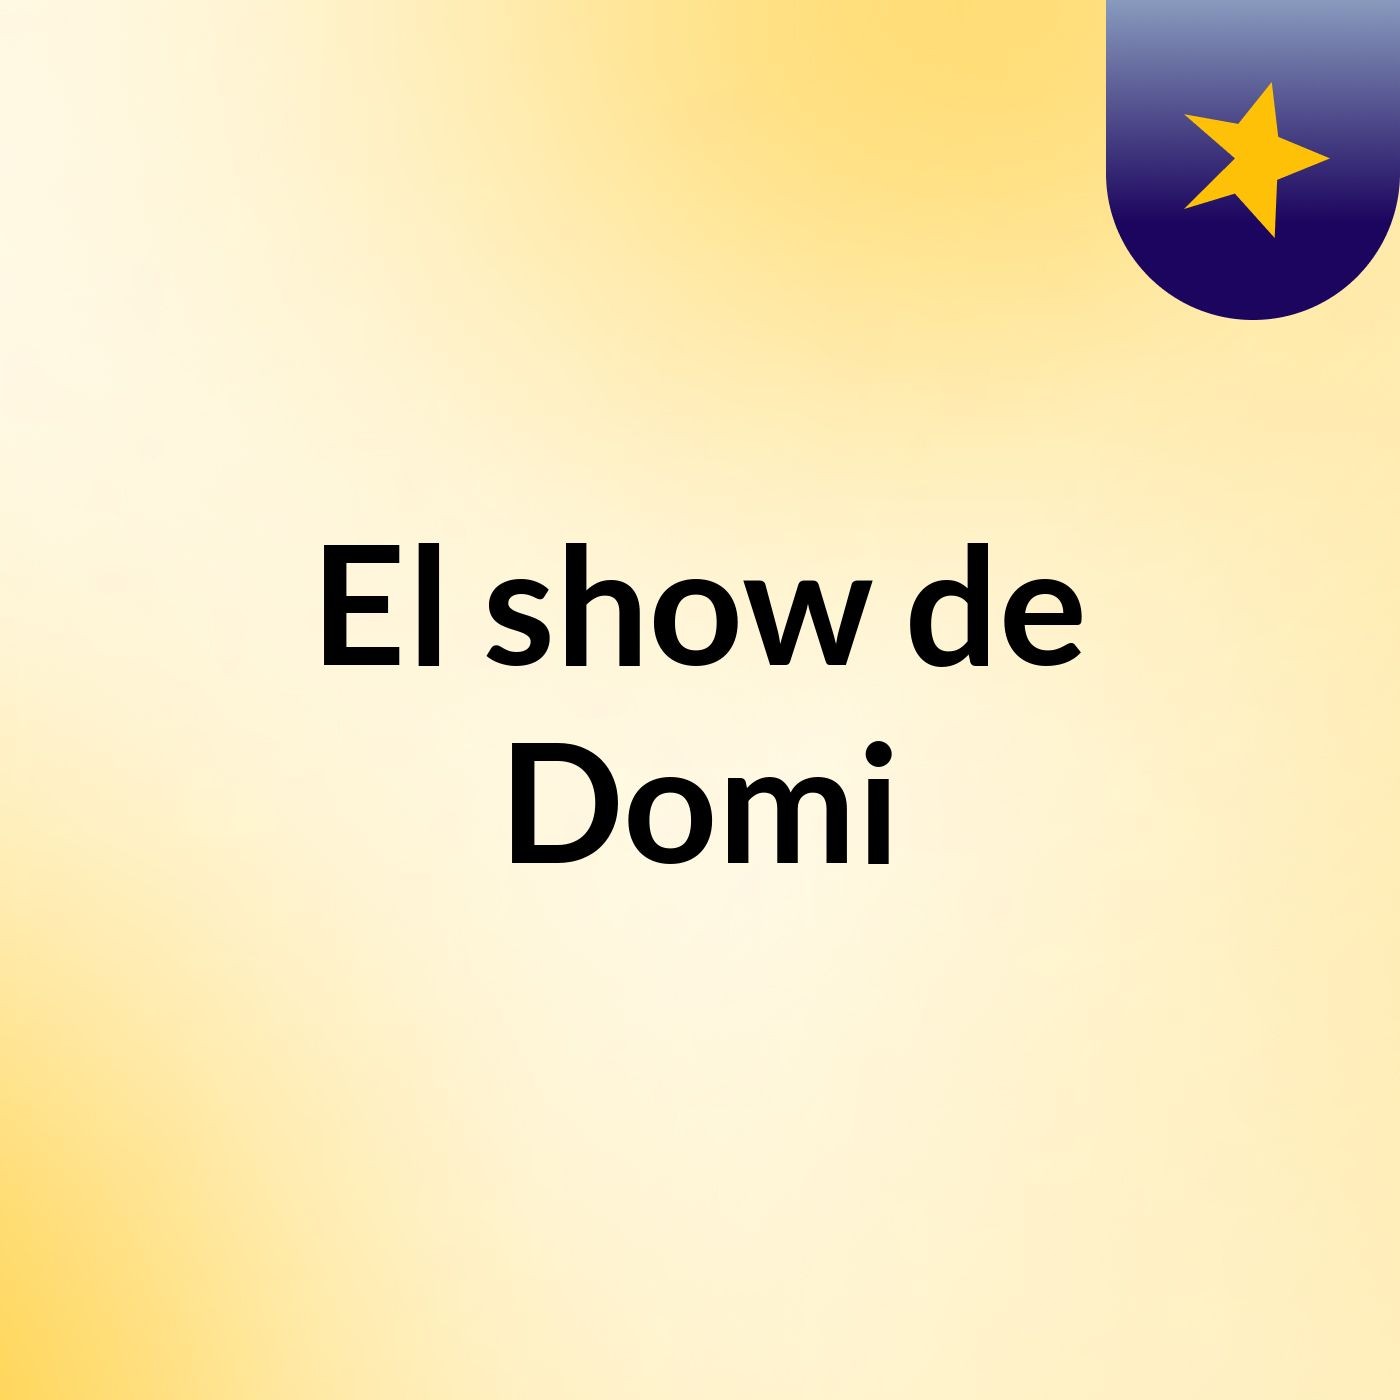 El show de Domi